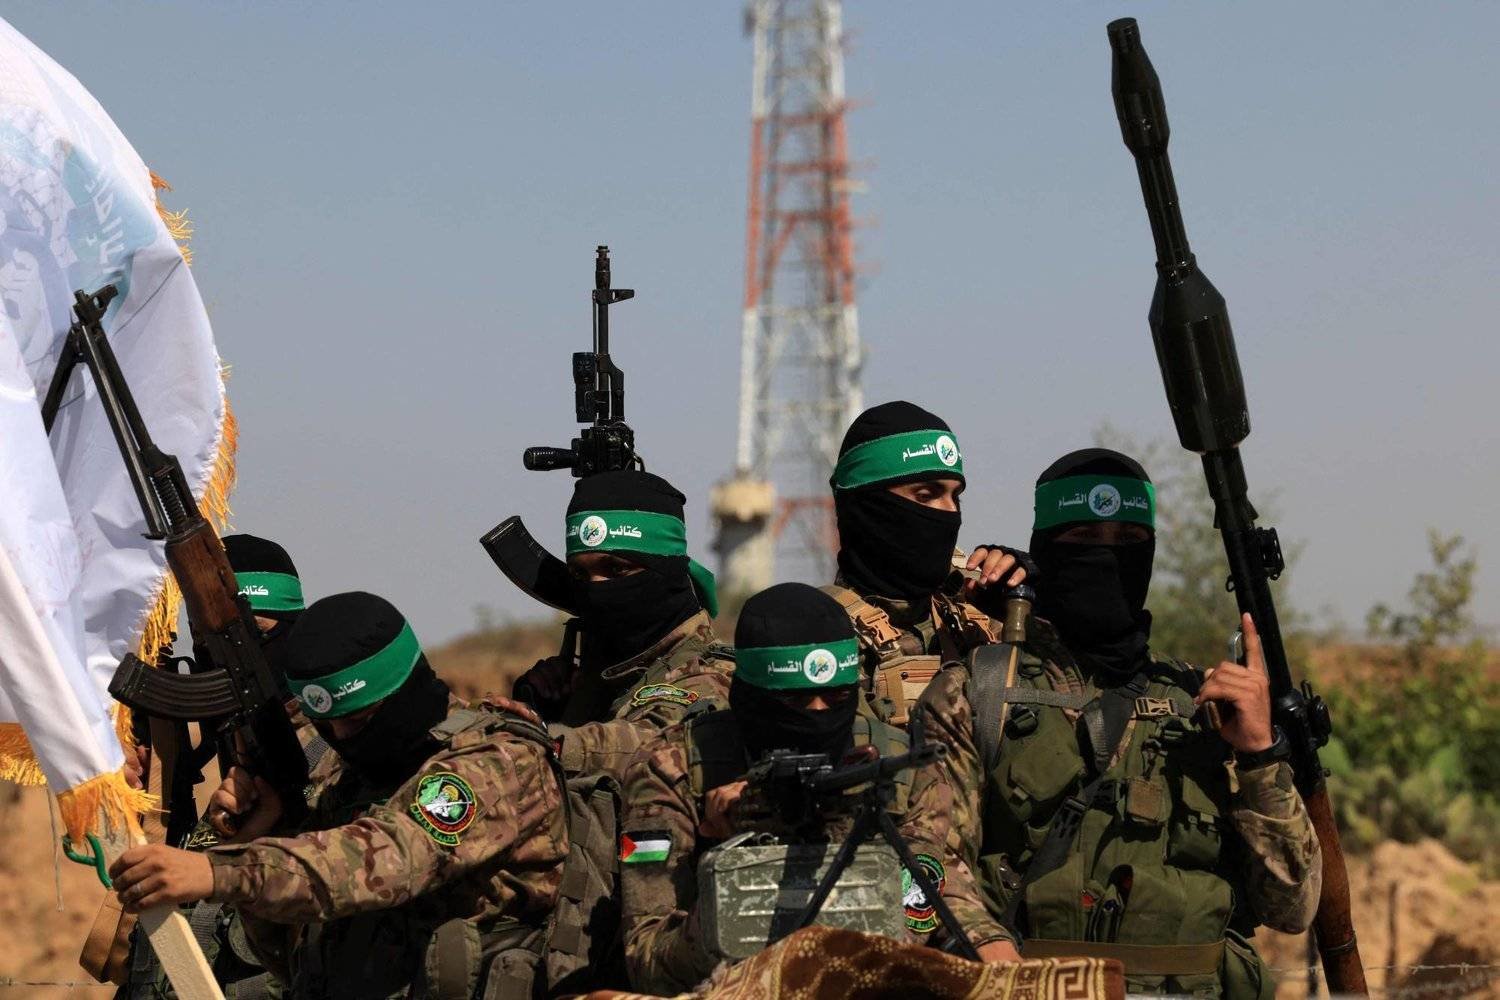 Hứng tổn thất khủng khiếp ở Gaza, Hamas vẫn giấu kín 'quân át chủ bài' có thể khiến Israel liêu xiêu- Ảnh 1.